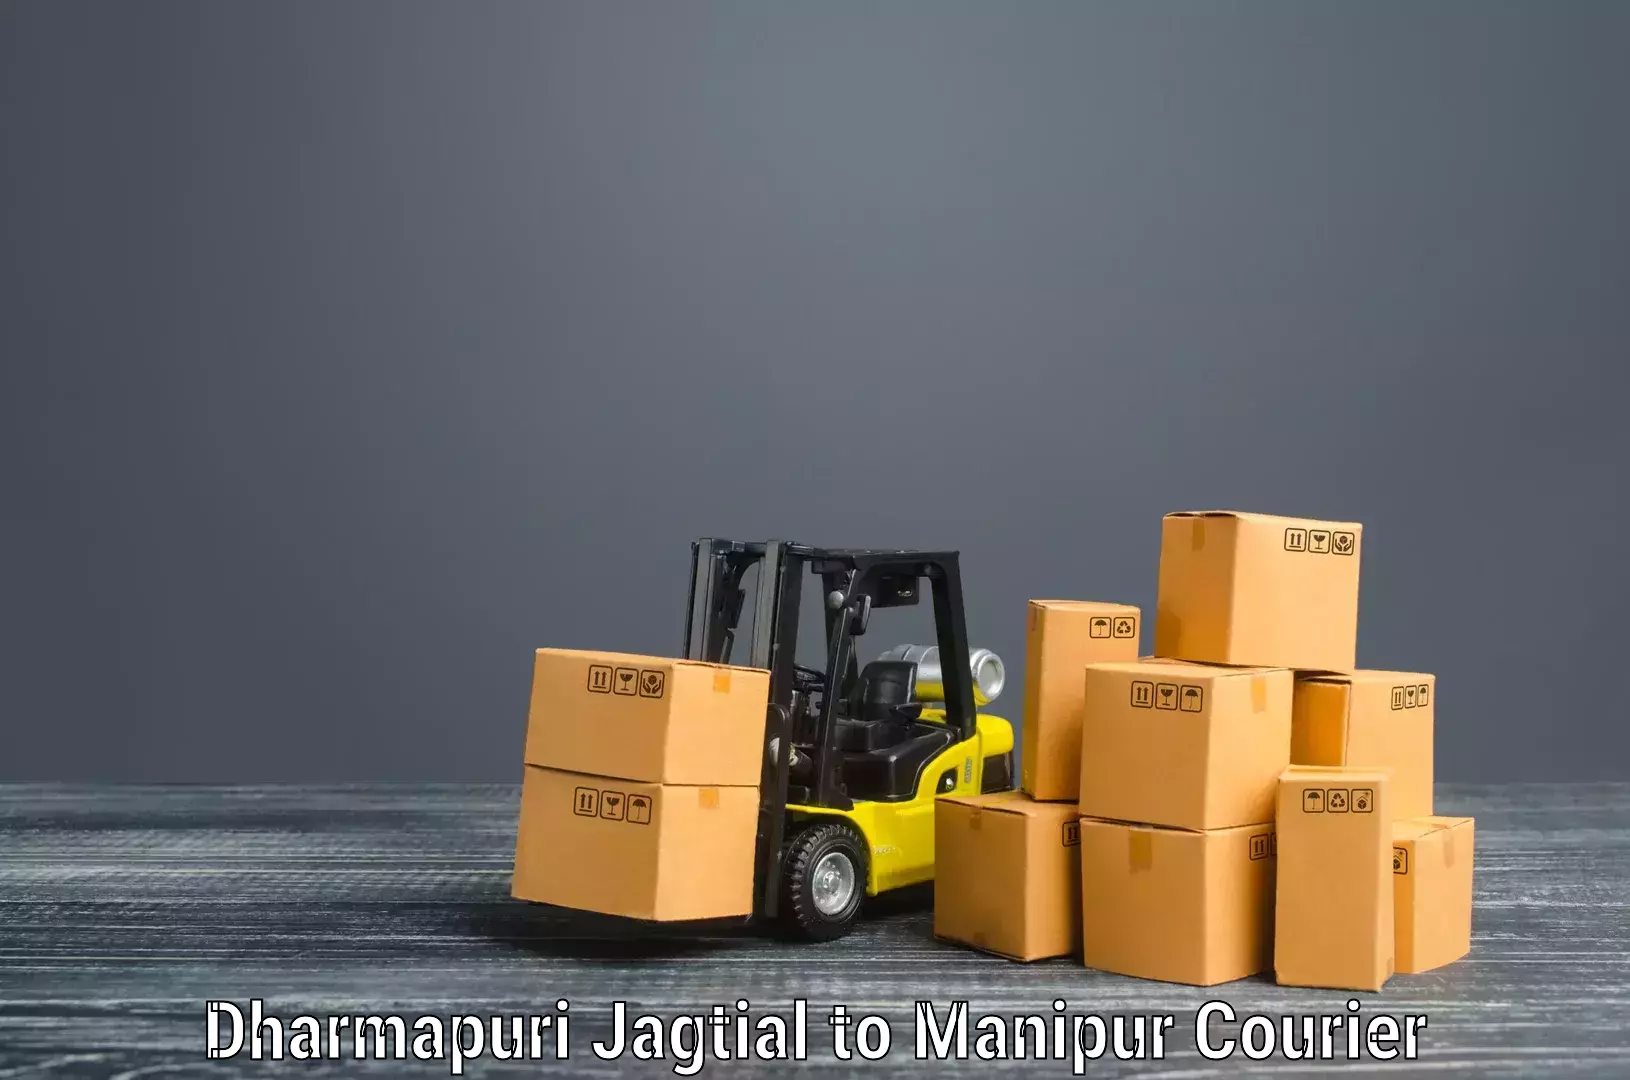 Doorstep moving services in Dharmapuri Jagtial to Kanti